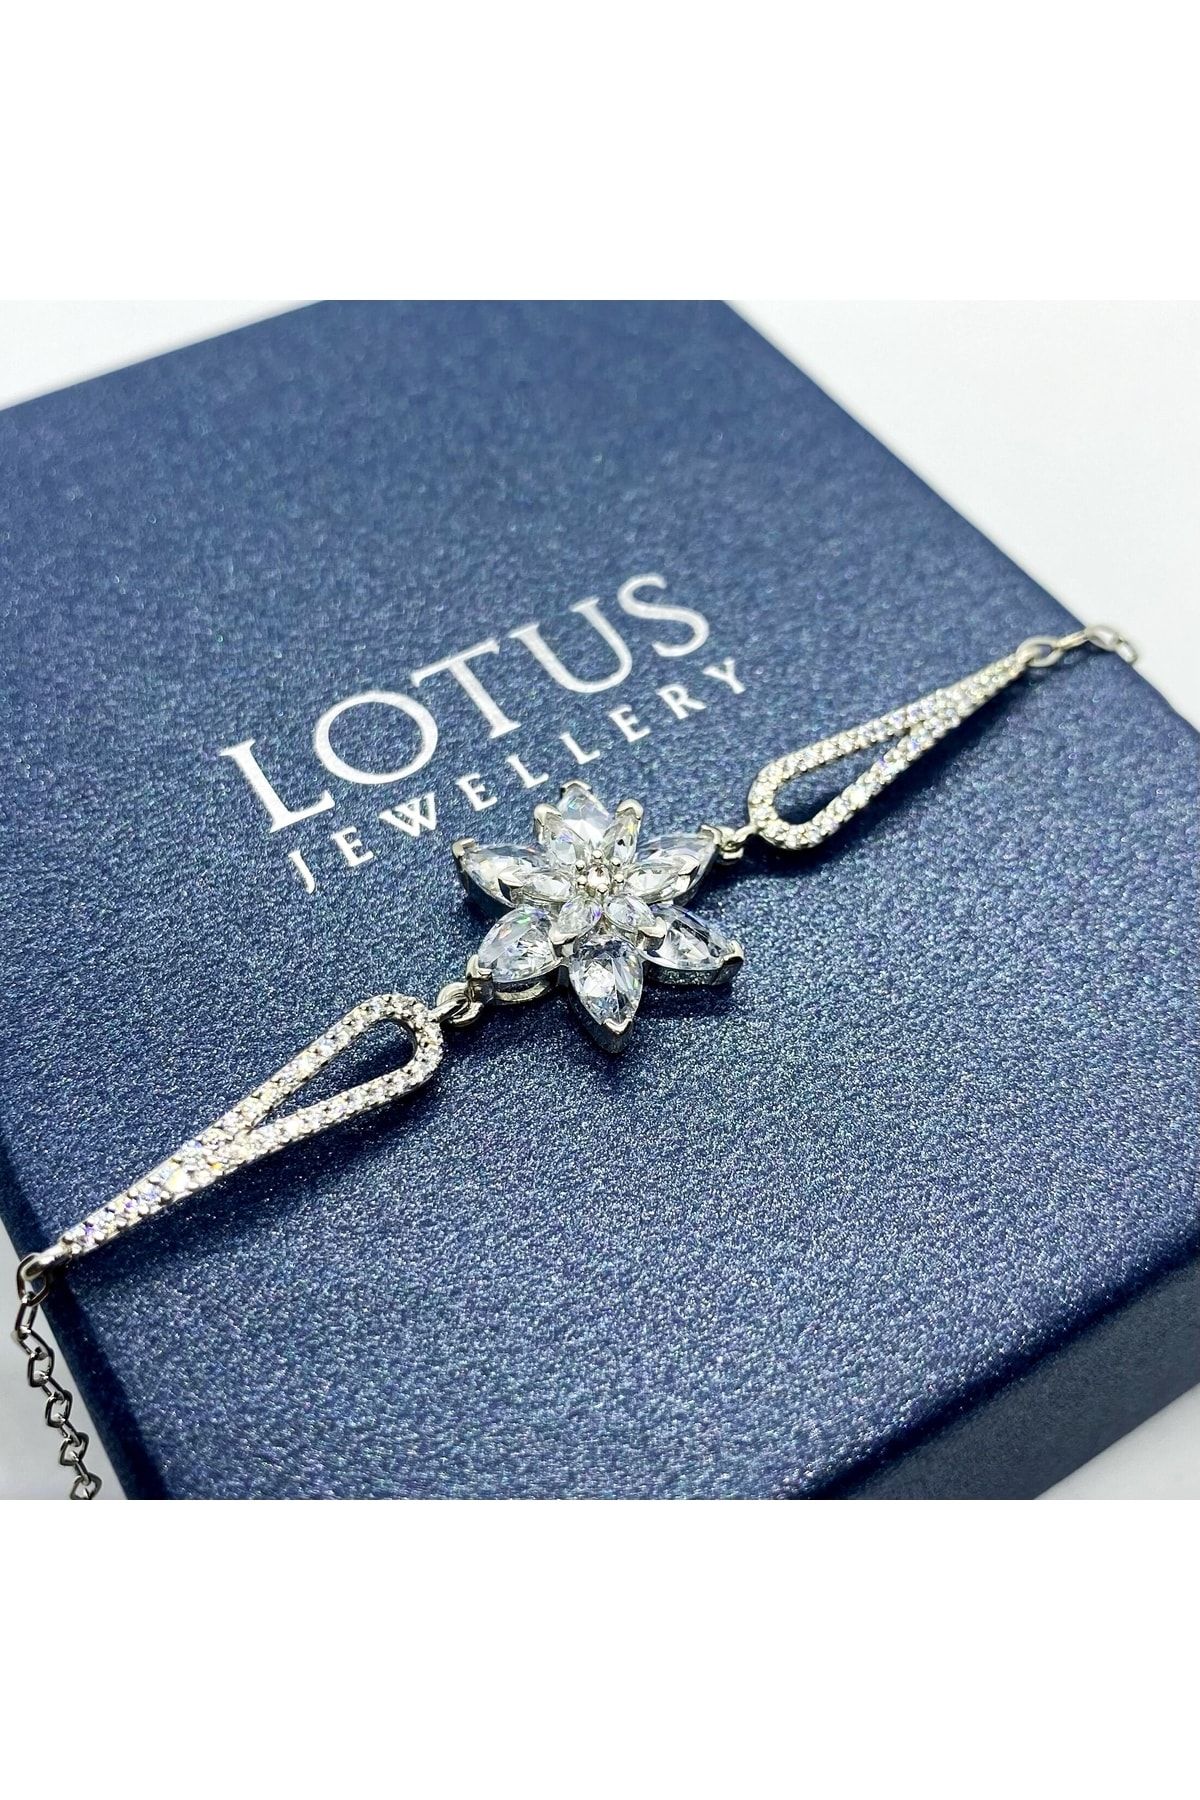 LOTUS JW Lotus Çiçeği Bileklik | 925 Ayar Gümüş Bileklik